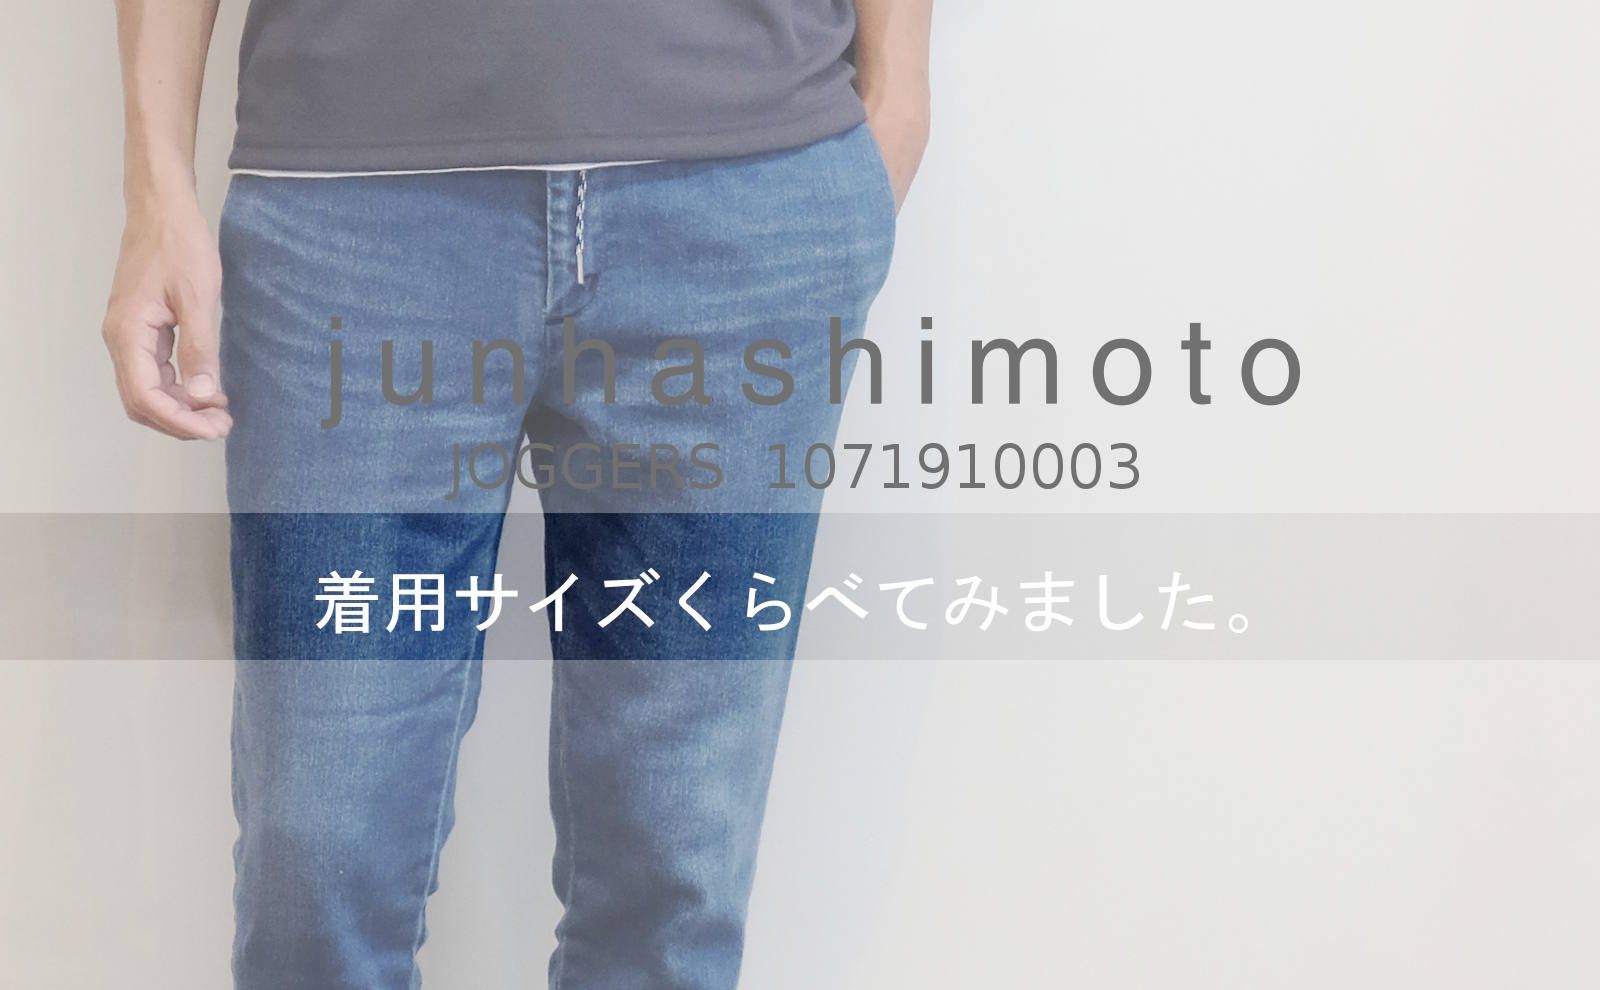 junhashimoto】 着用サイズをくらべてみました。 | ROSSO